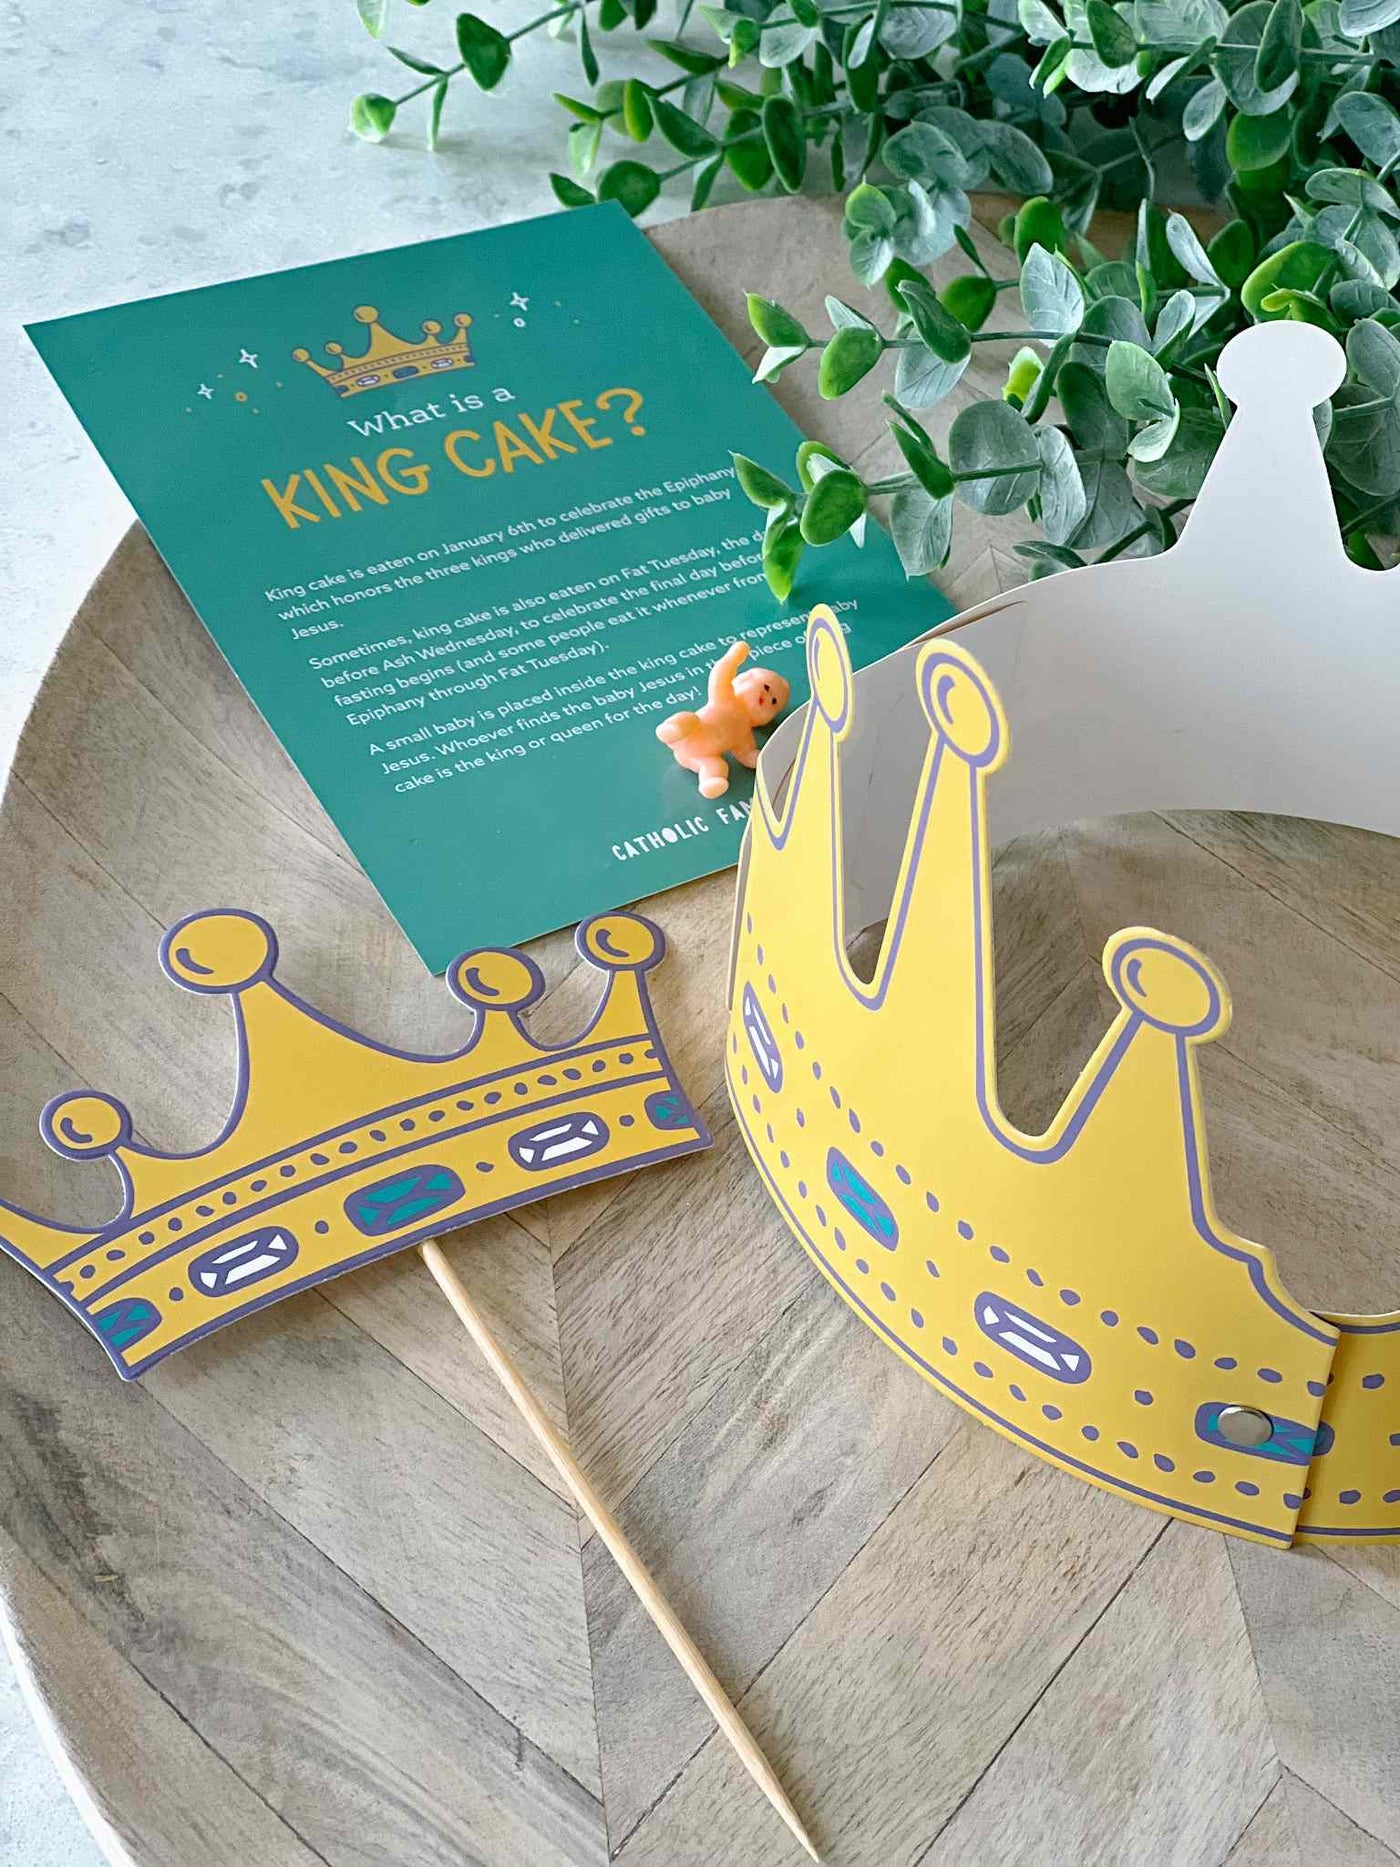 King Cake Kit